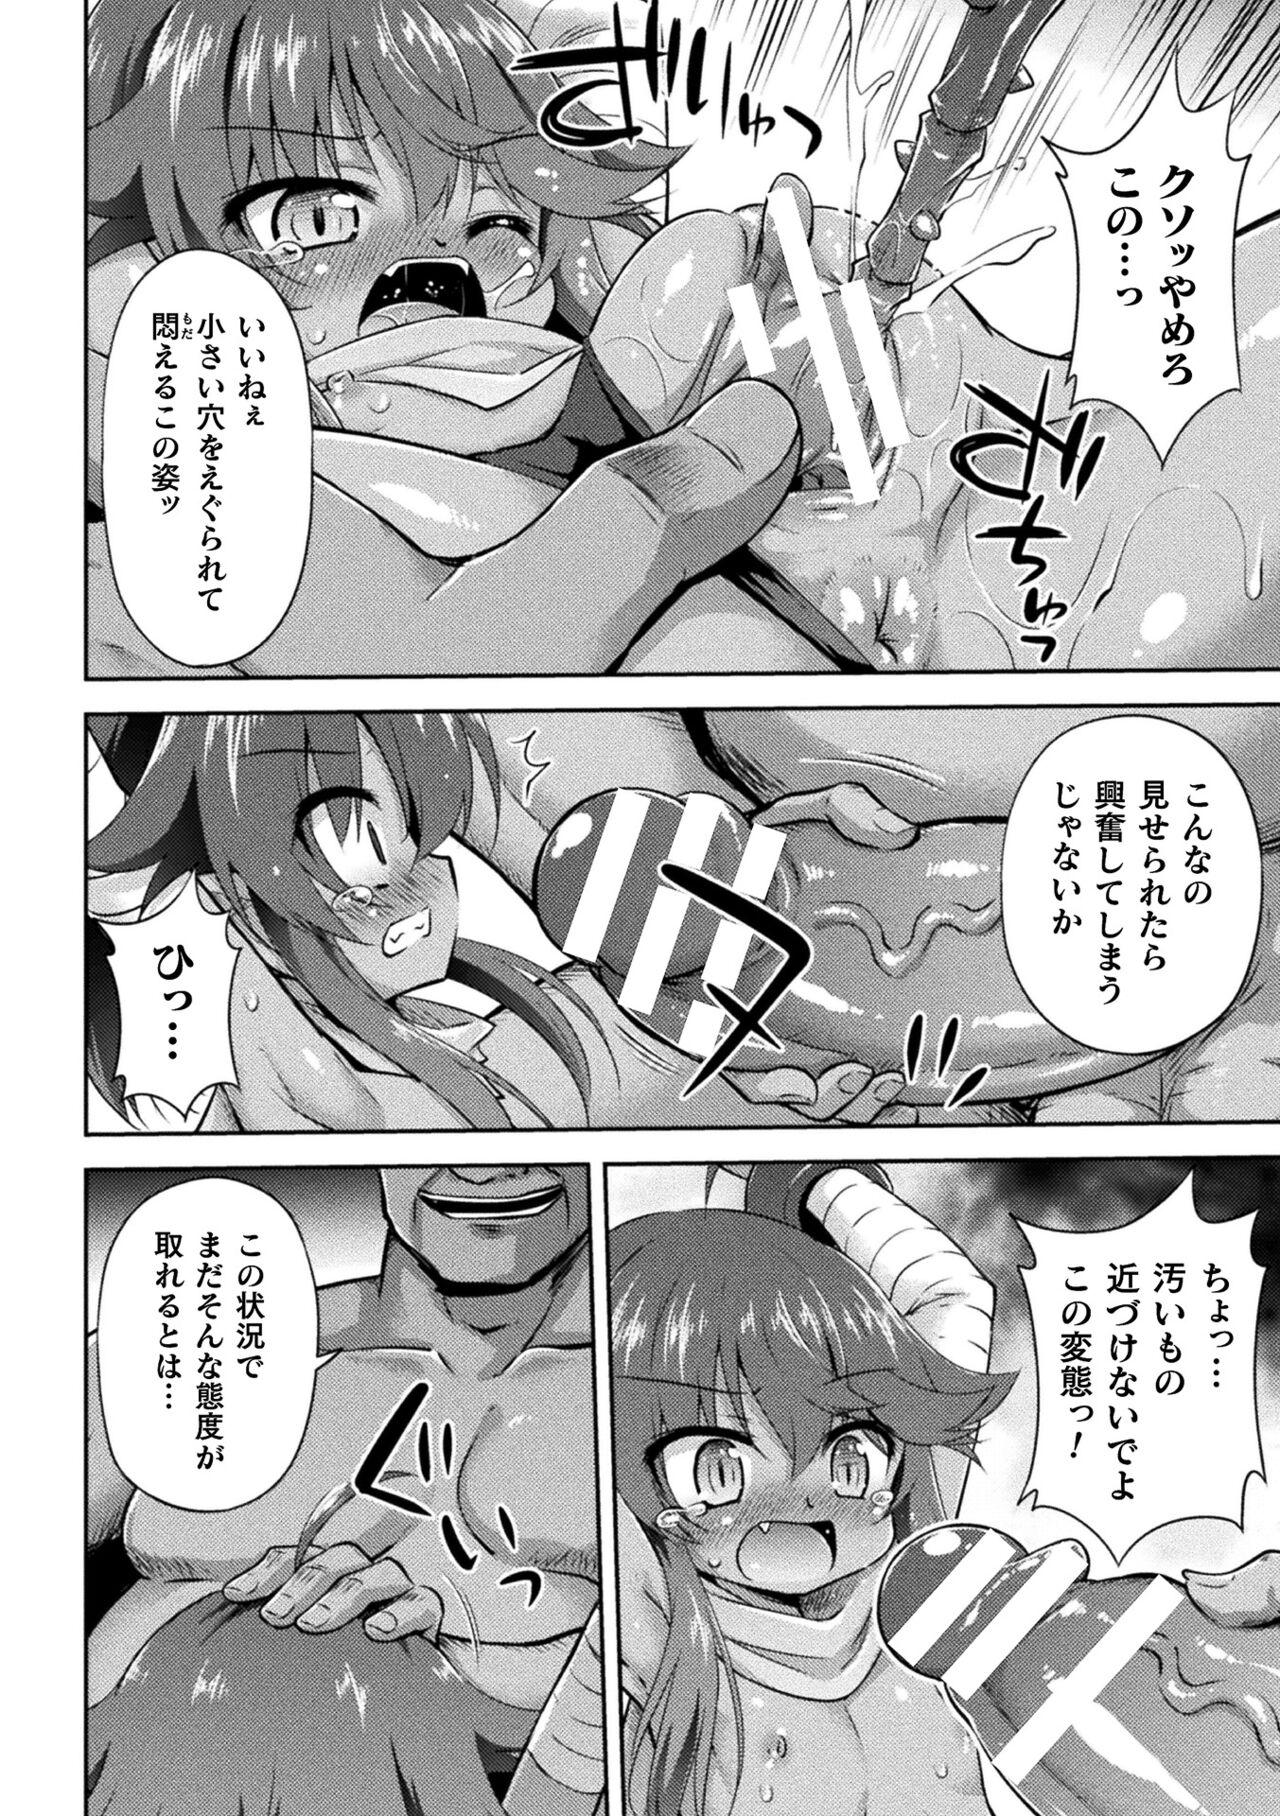 Stripping 2D Comic Magazine Mesugaki Haramase Seisai! Wakarase Chakushou de Omedeta Mama Debut Vol. 2 Mamadas - Page 10